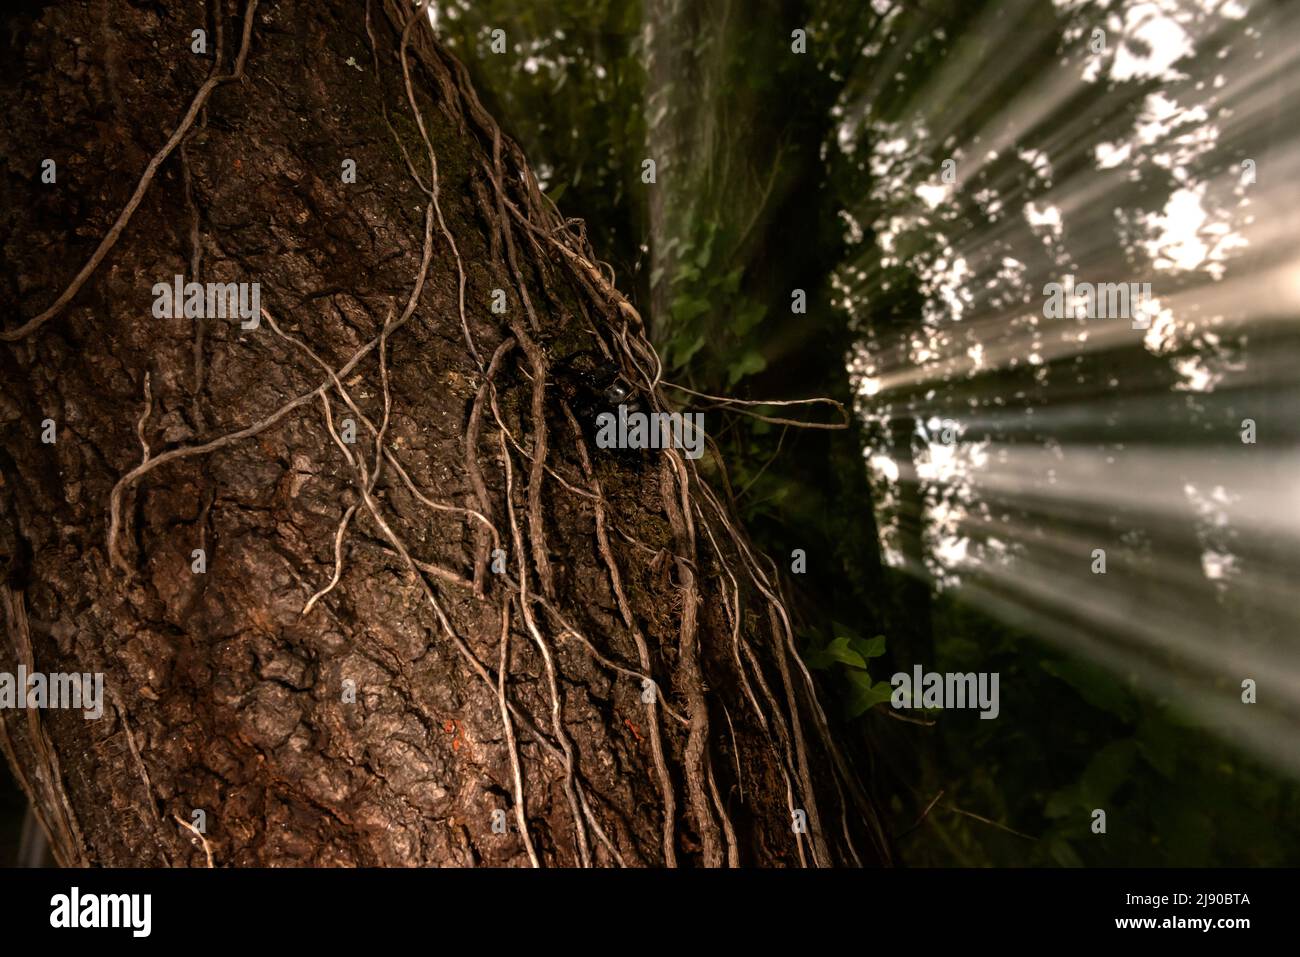 Roter Brokkethirsch, Vacaloura oder lucanus cervus, paart sich in einem vergifteten Baum mit Zoomeffekt bei Beleuchtung Stockfoto